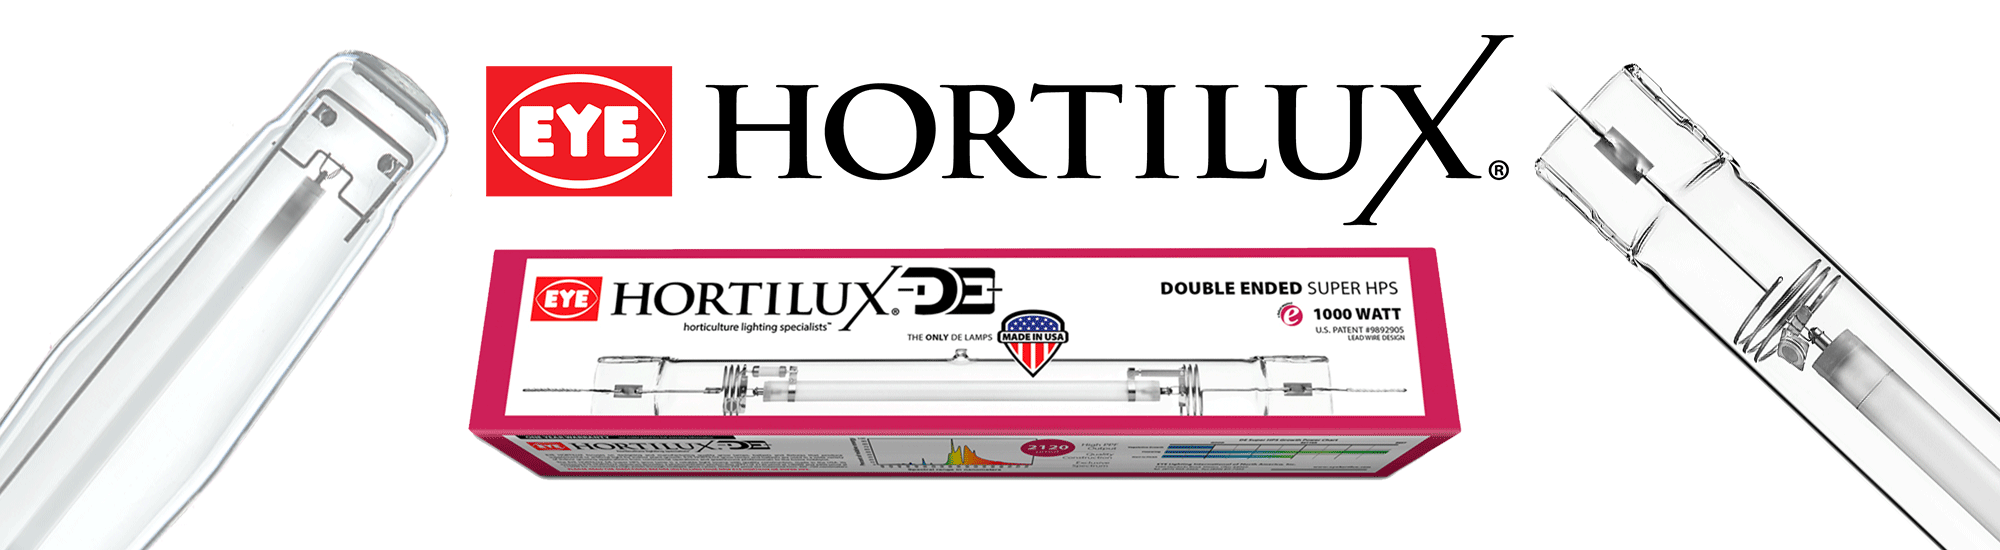 hortilux-banner_fr